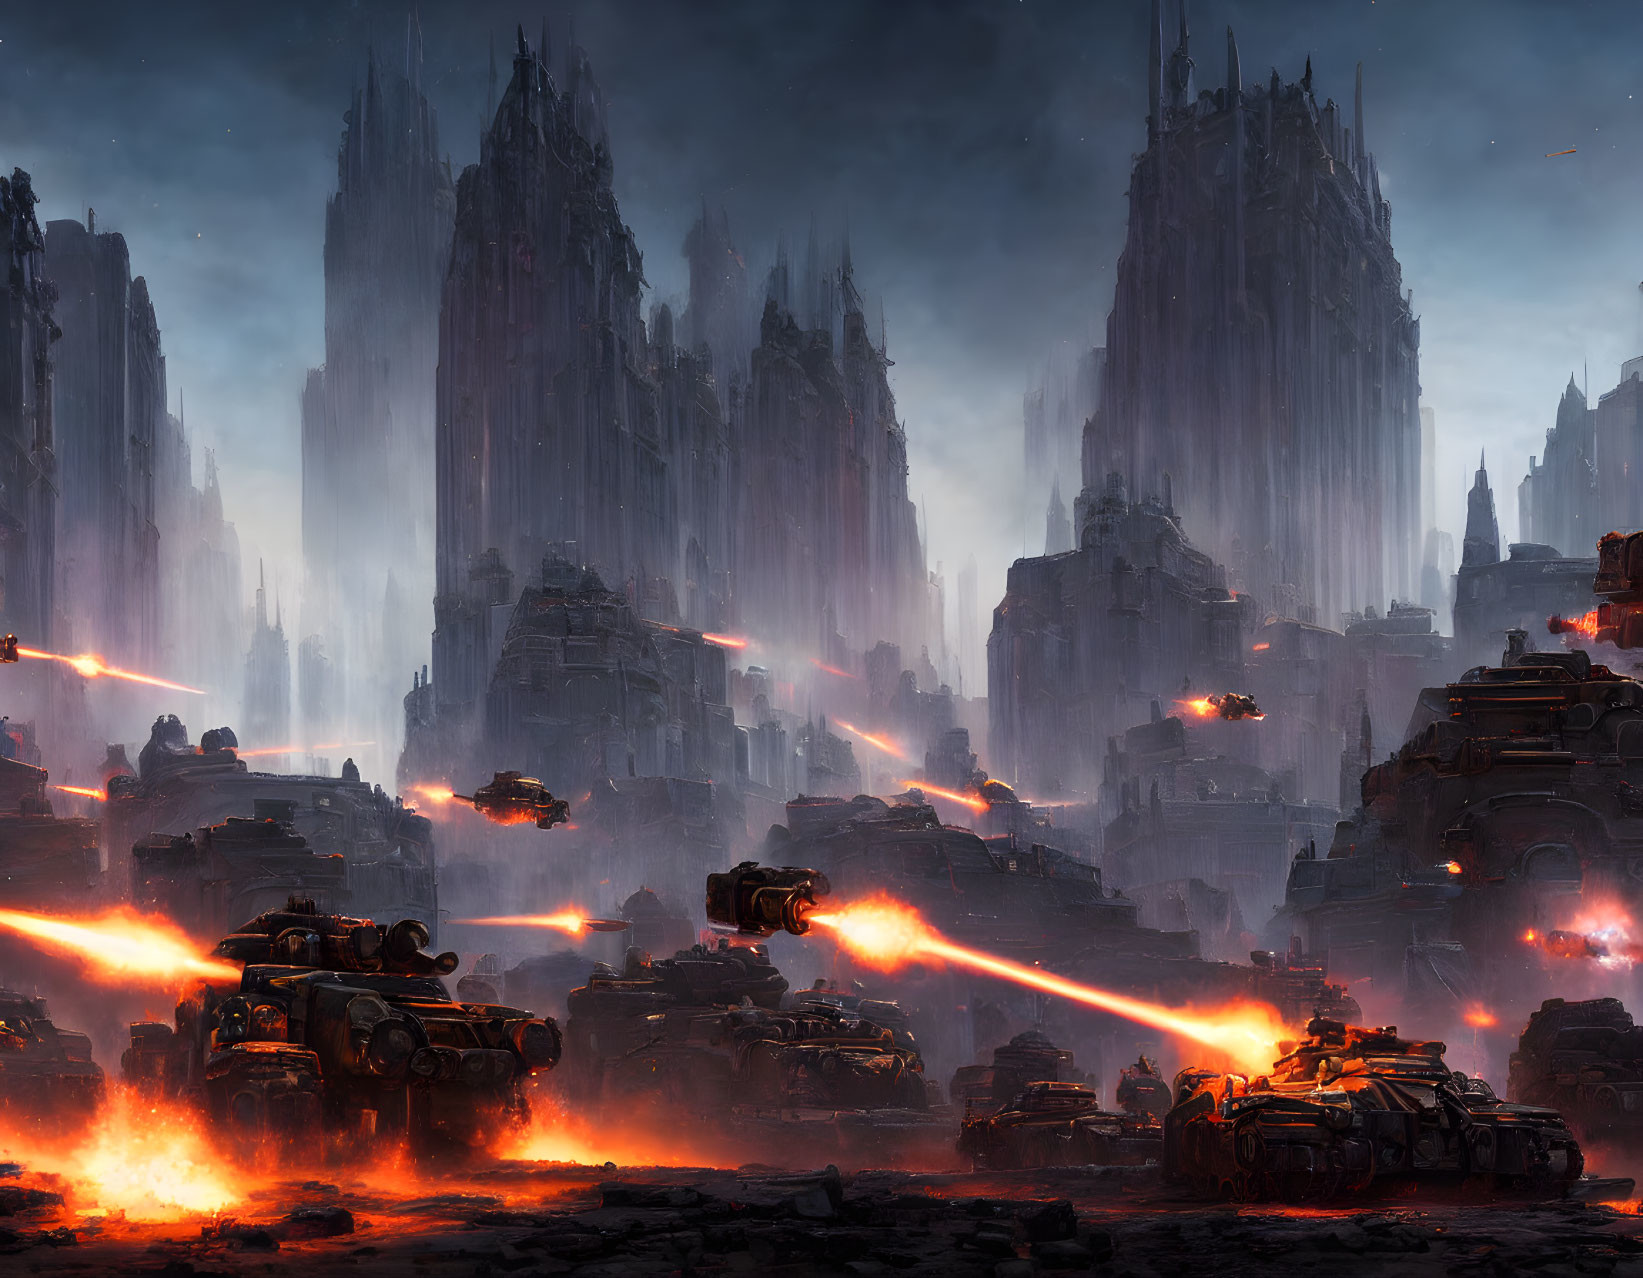 Dystopian battlefield with laser-firing tanks in ruins